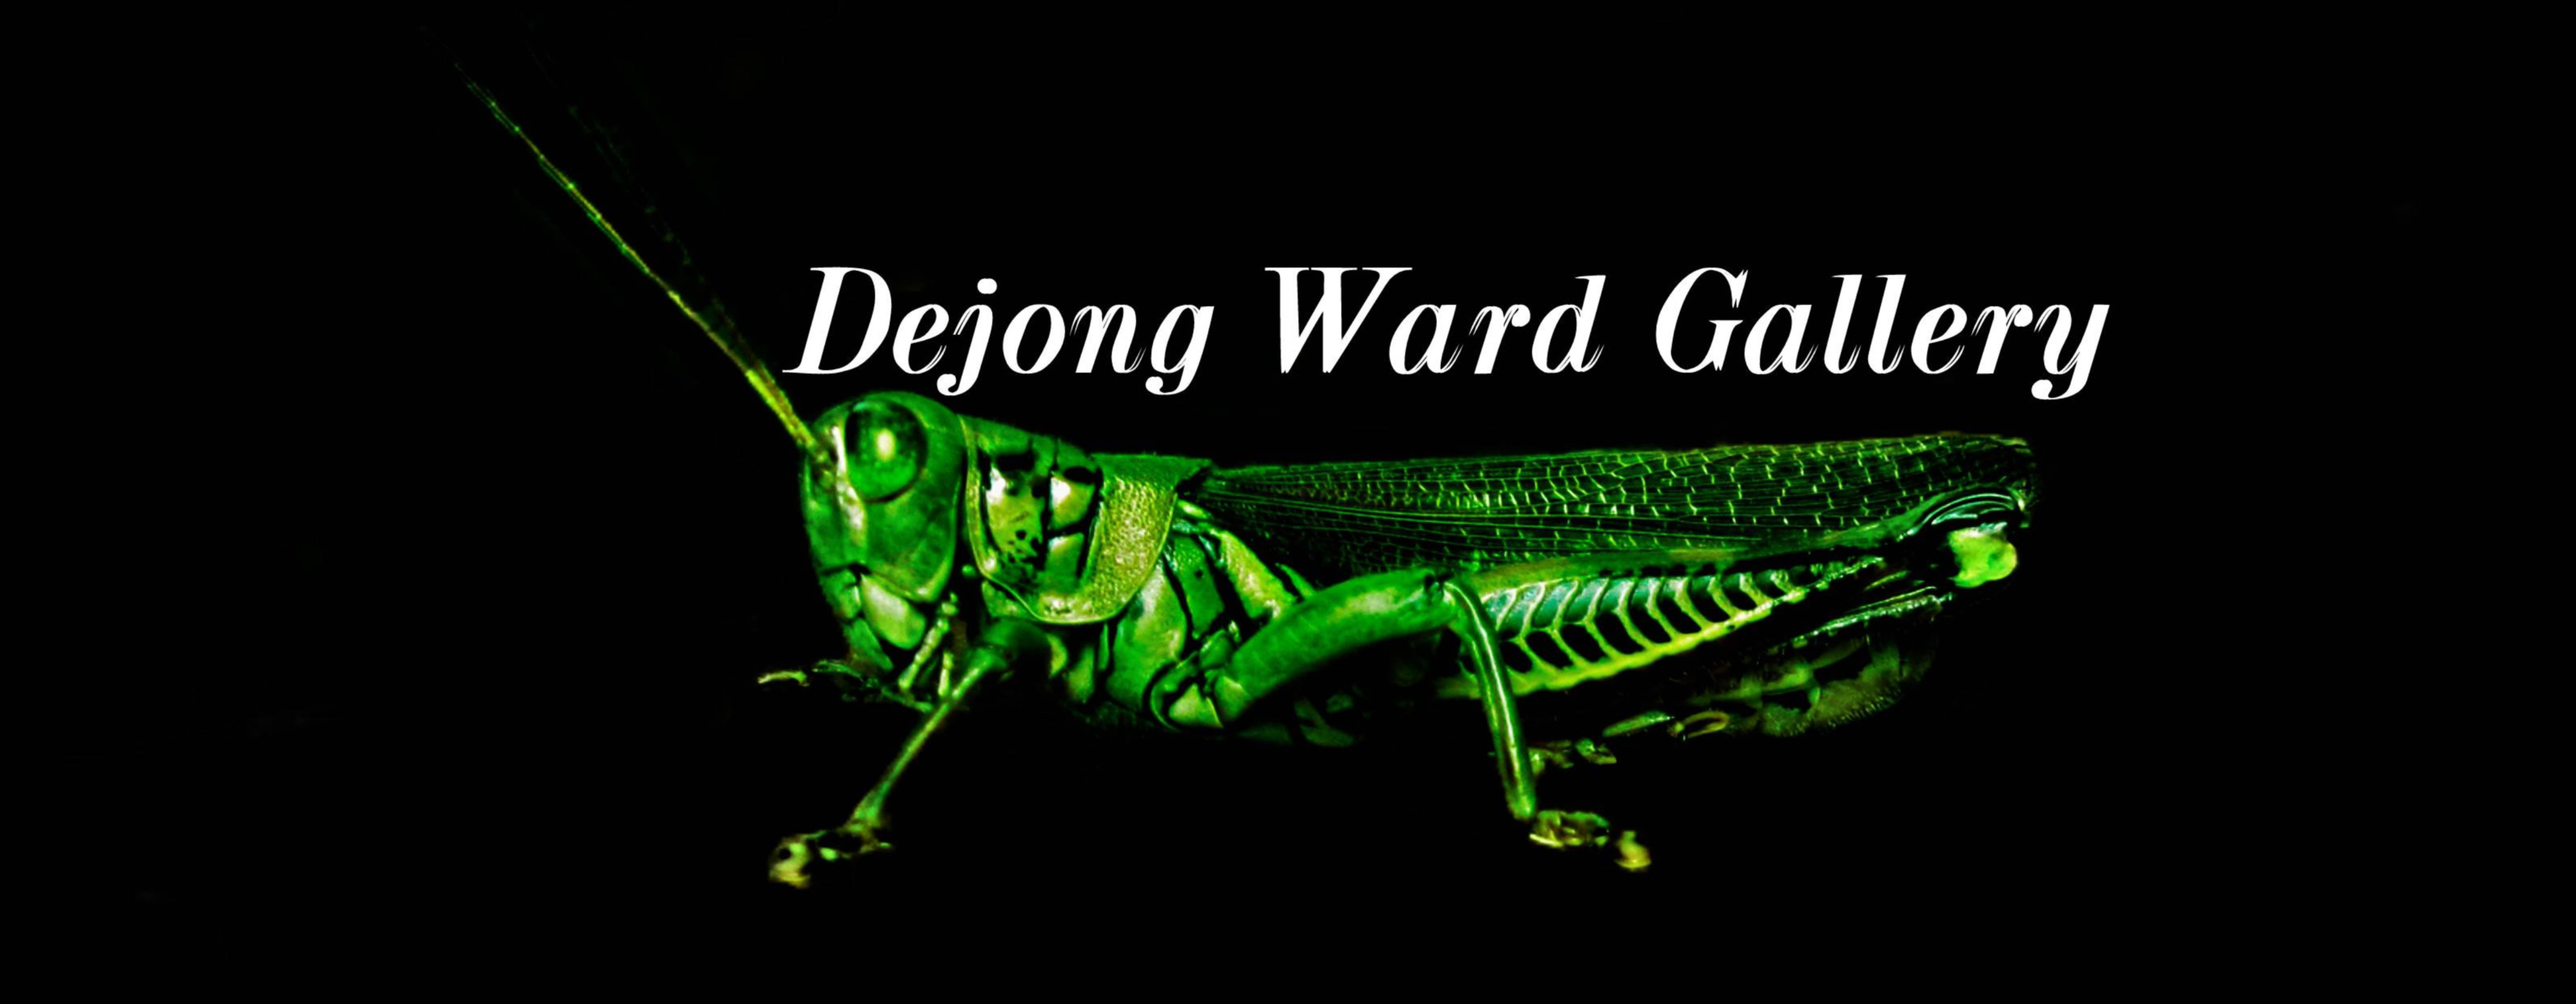 DeJong Ward Gallery